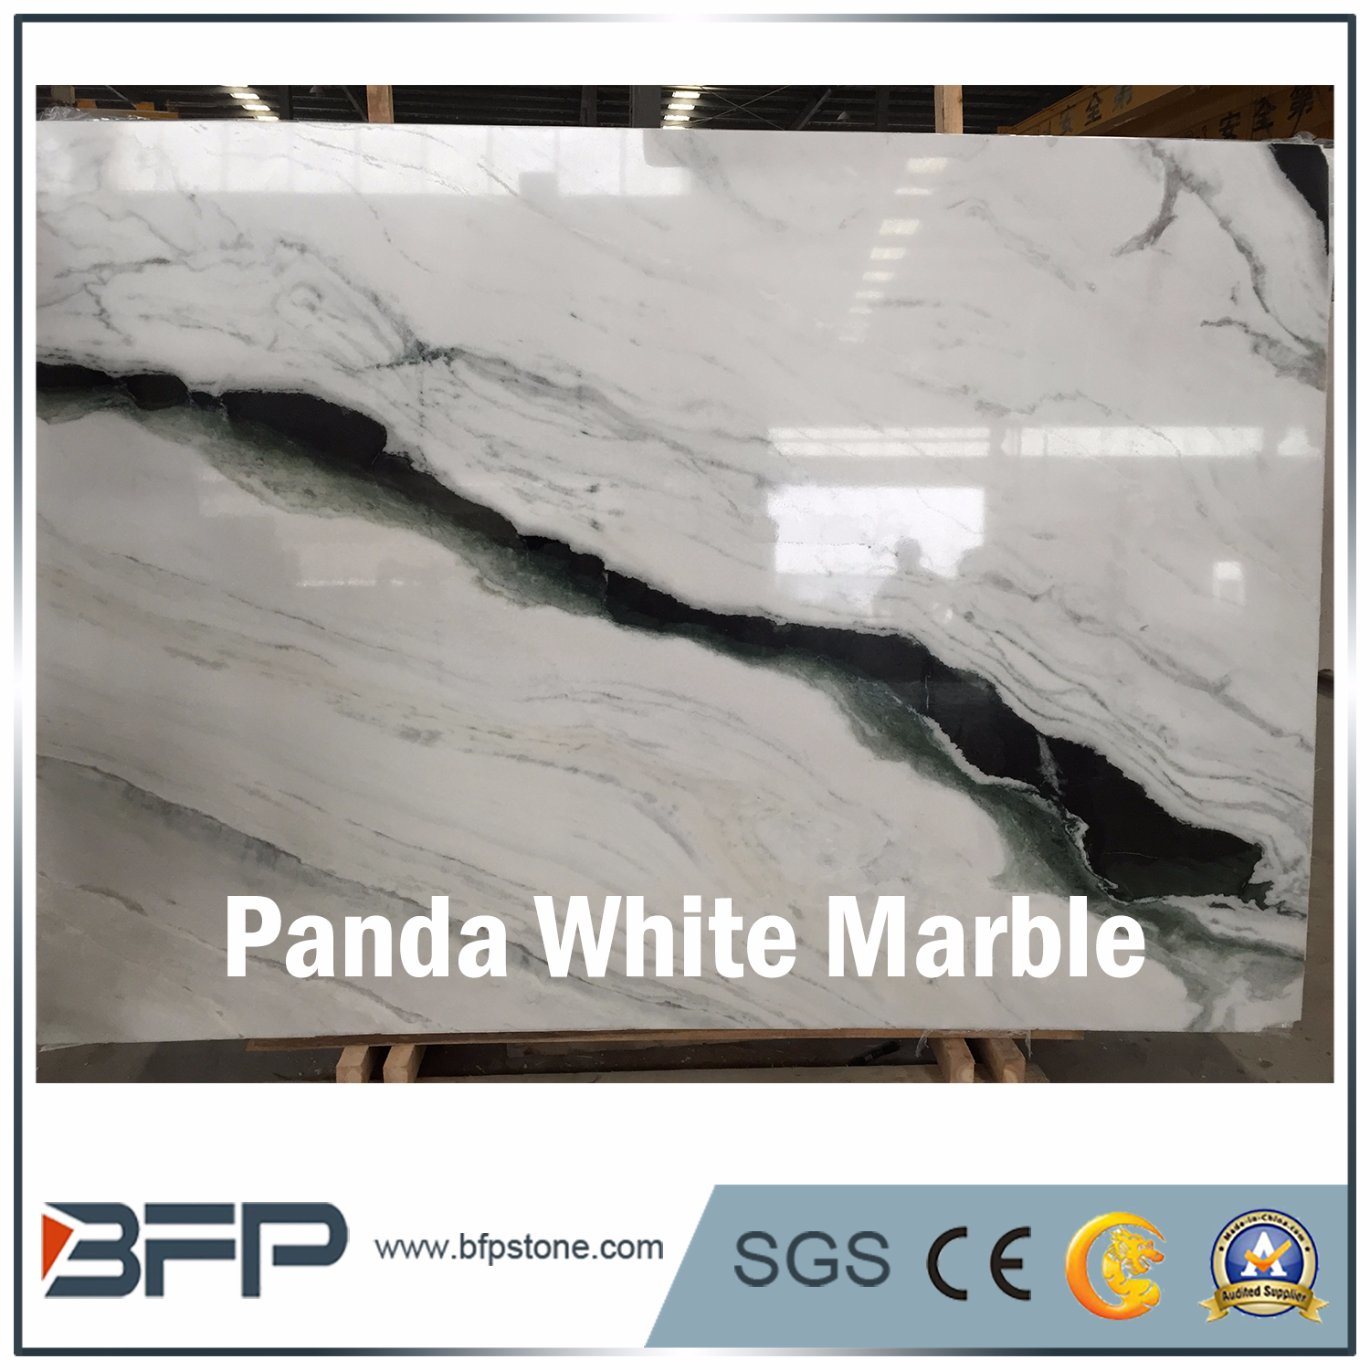 High End Panda White Marble Slab for Hall Floor Tile